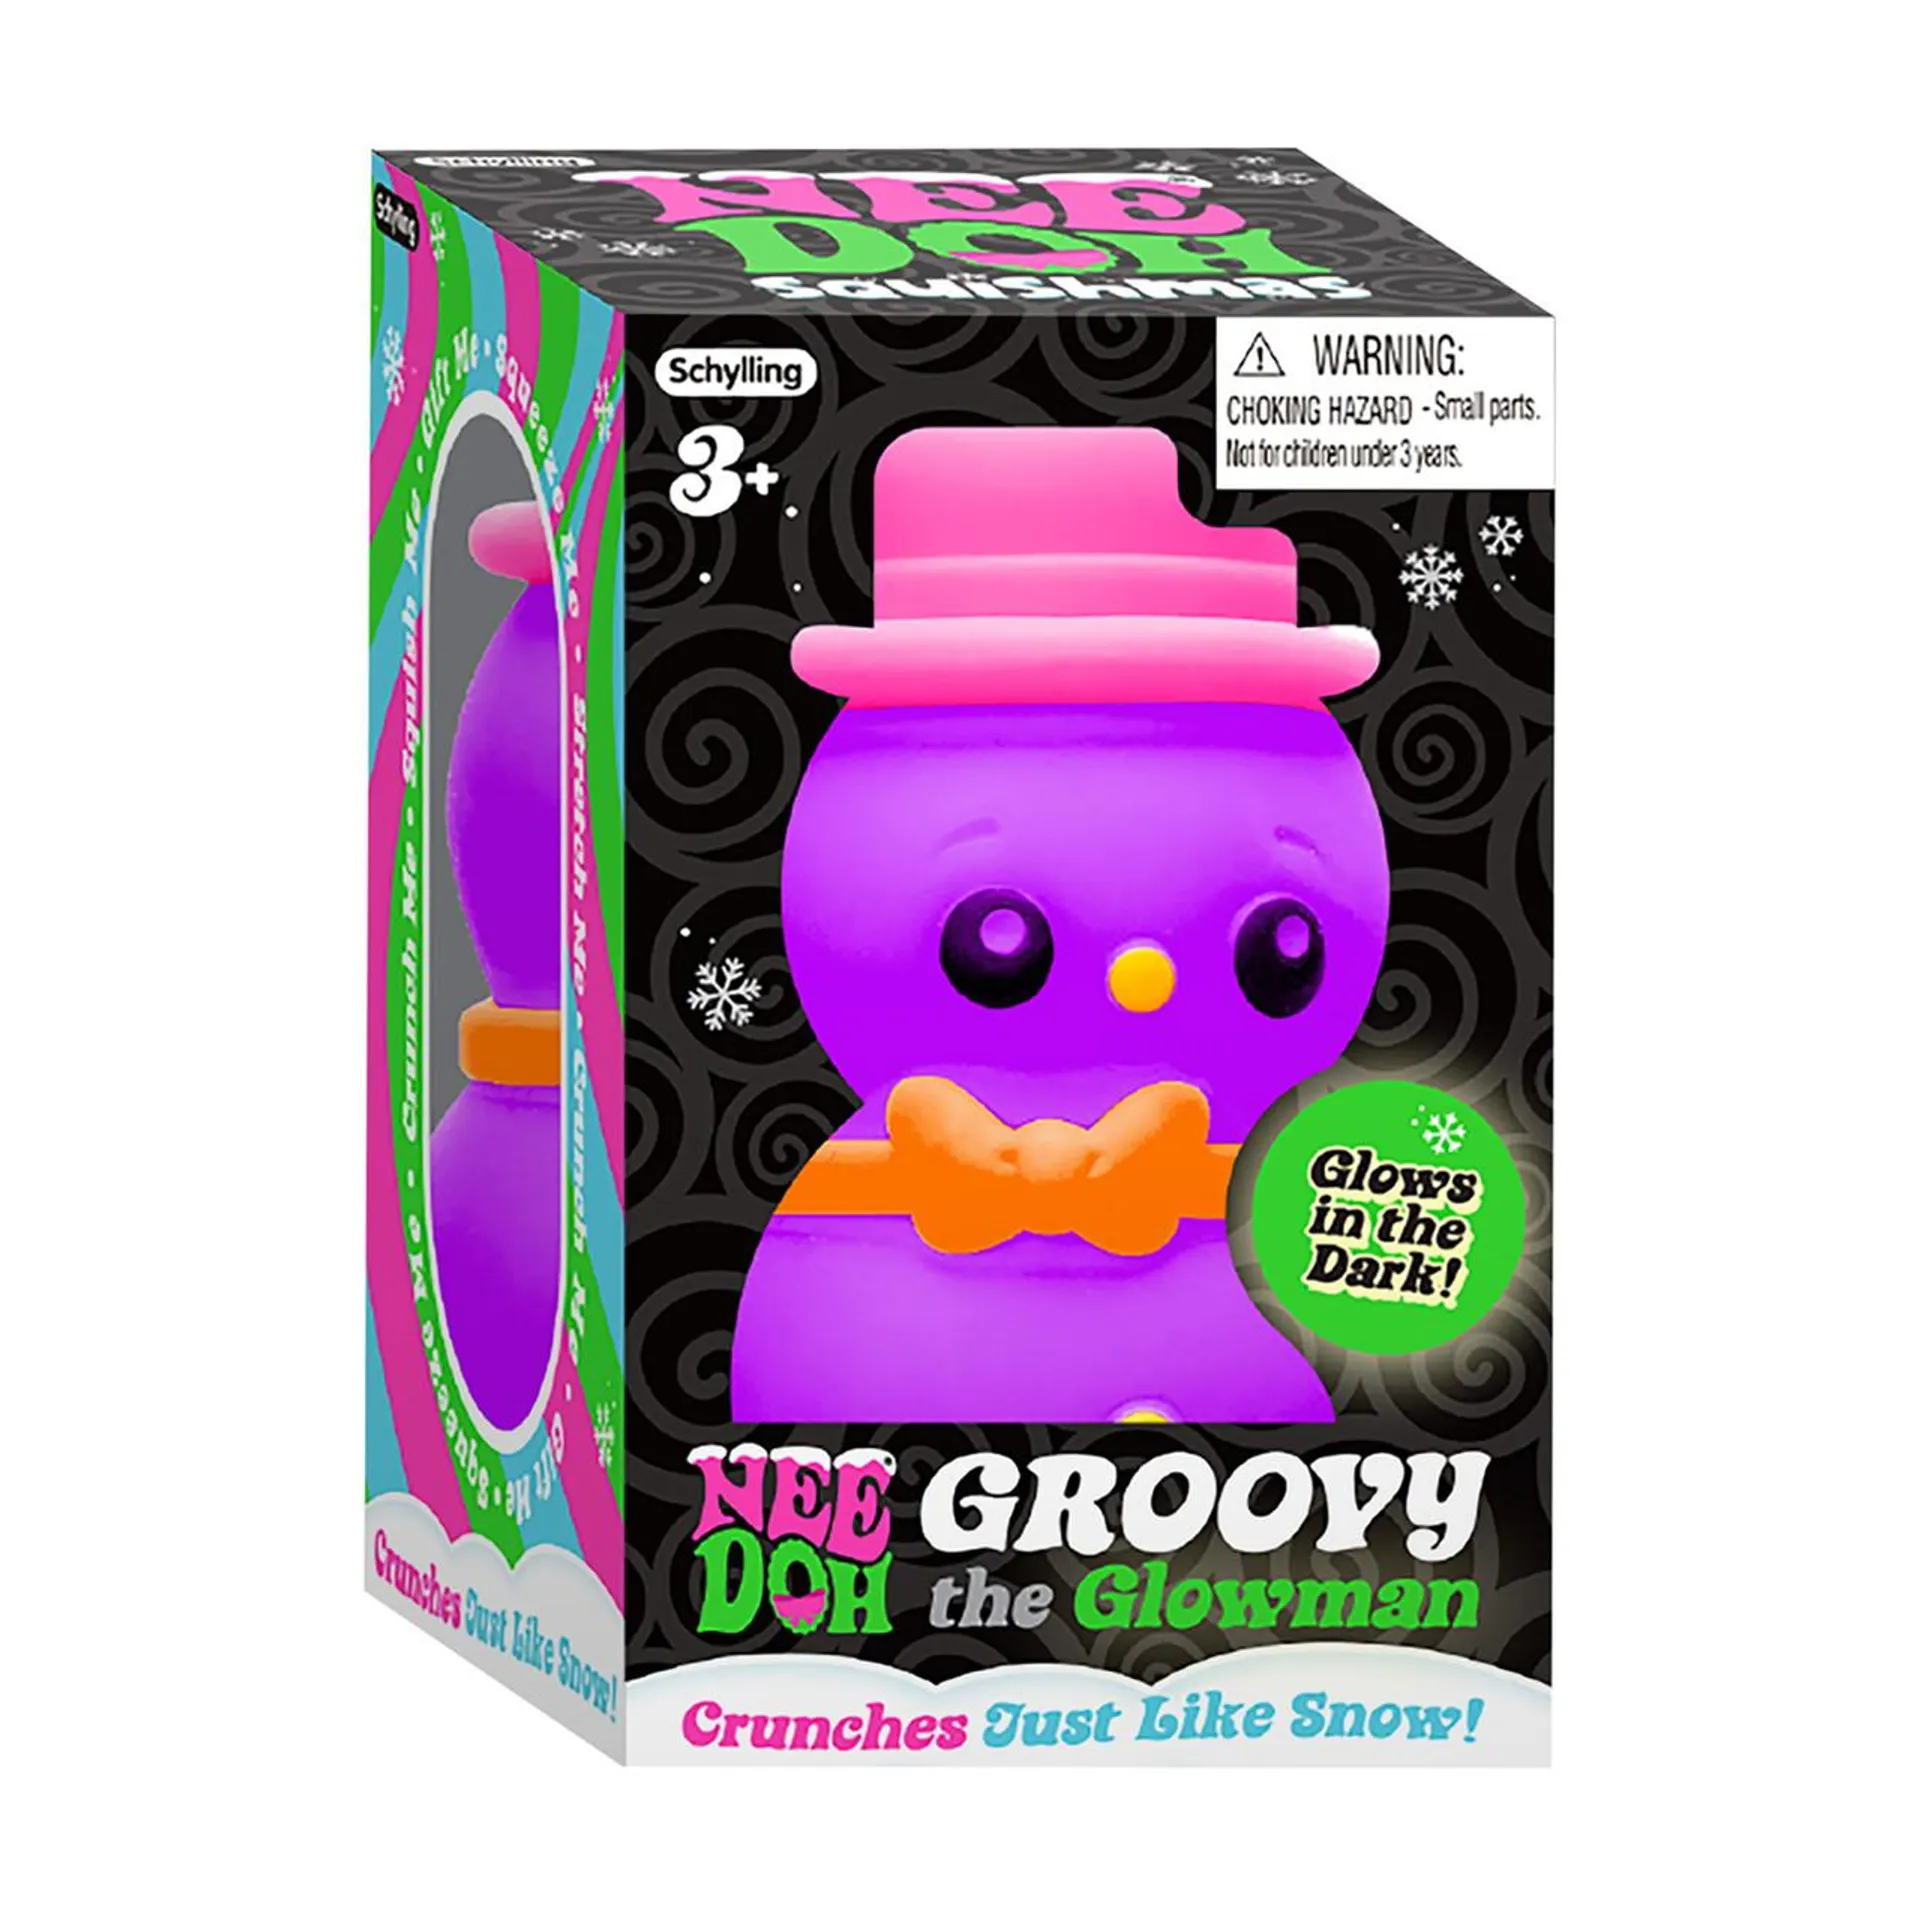 Nee-Doh Groovy the Glowman